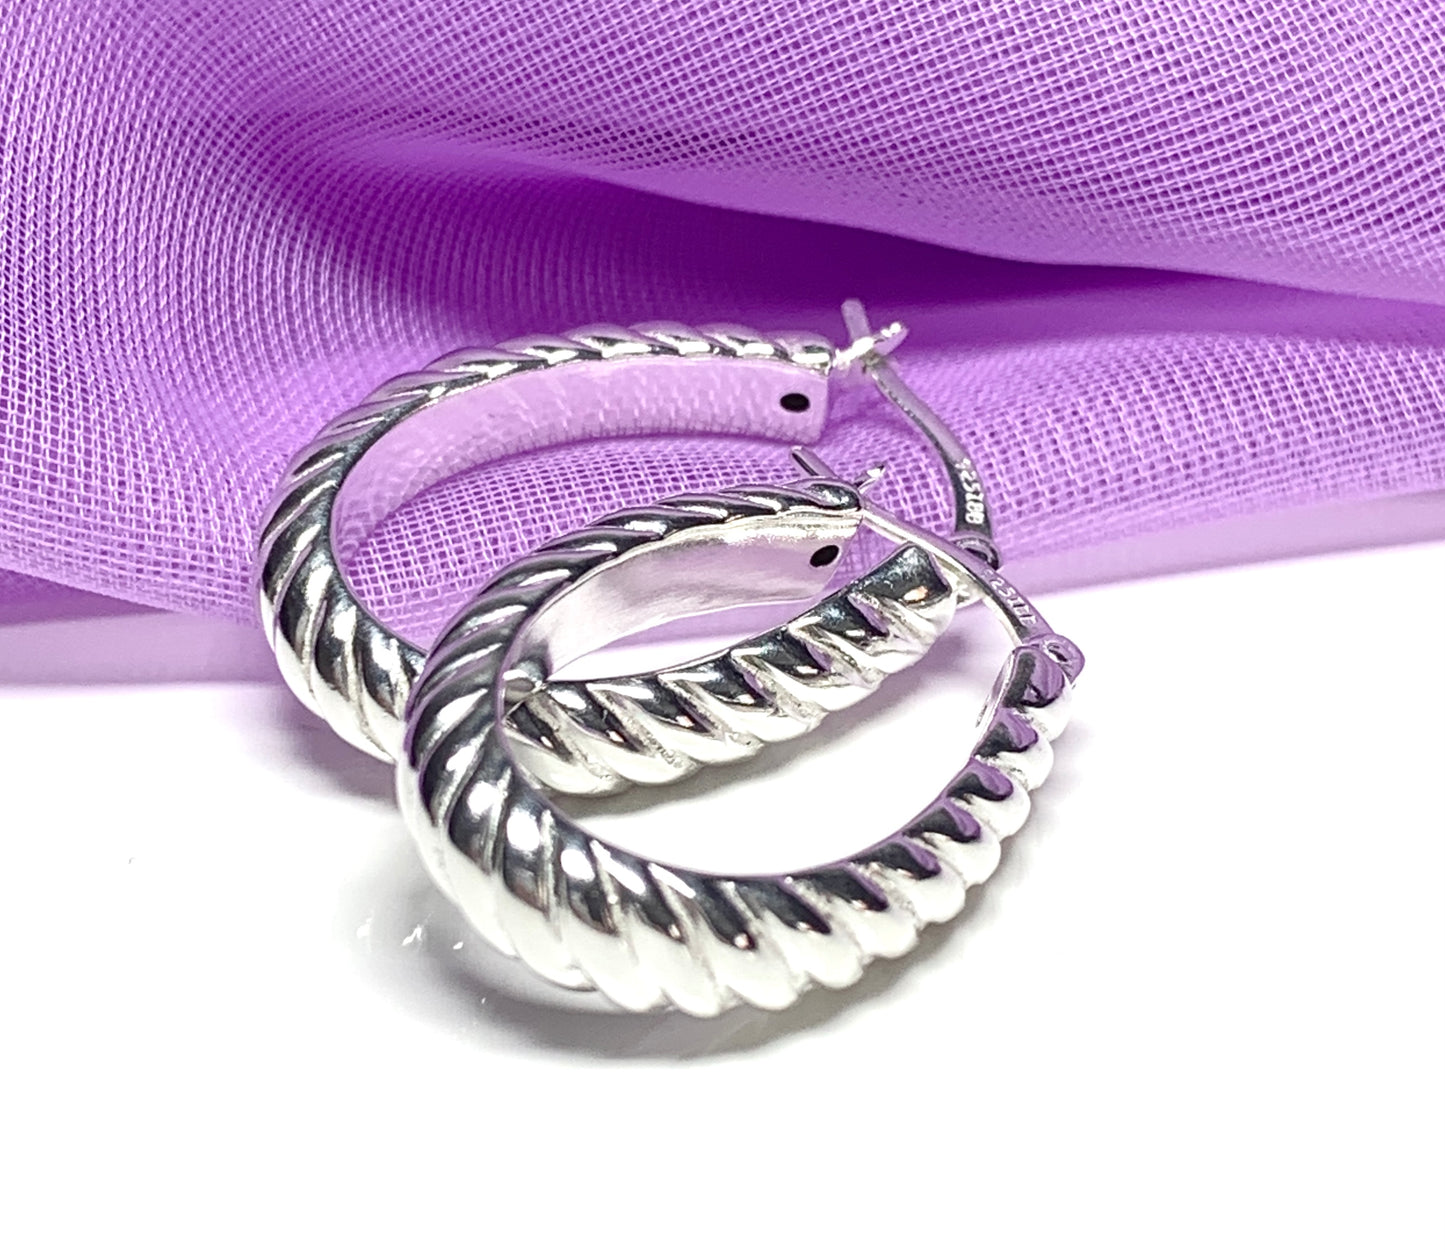 Sterling silver oval hoop earrings swirl patterned 27 mm x 18 mm